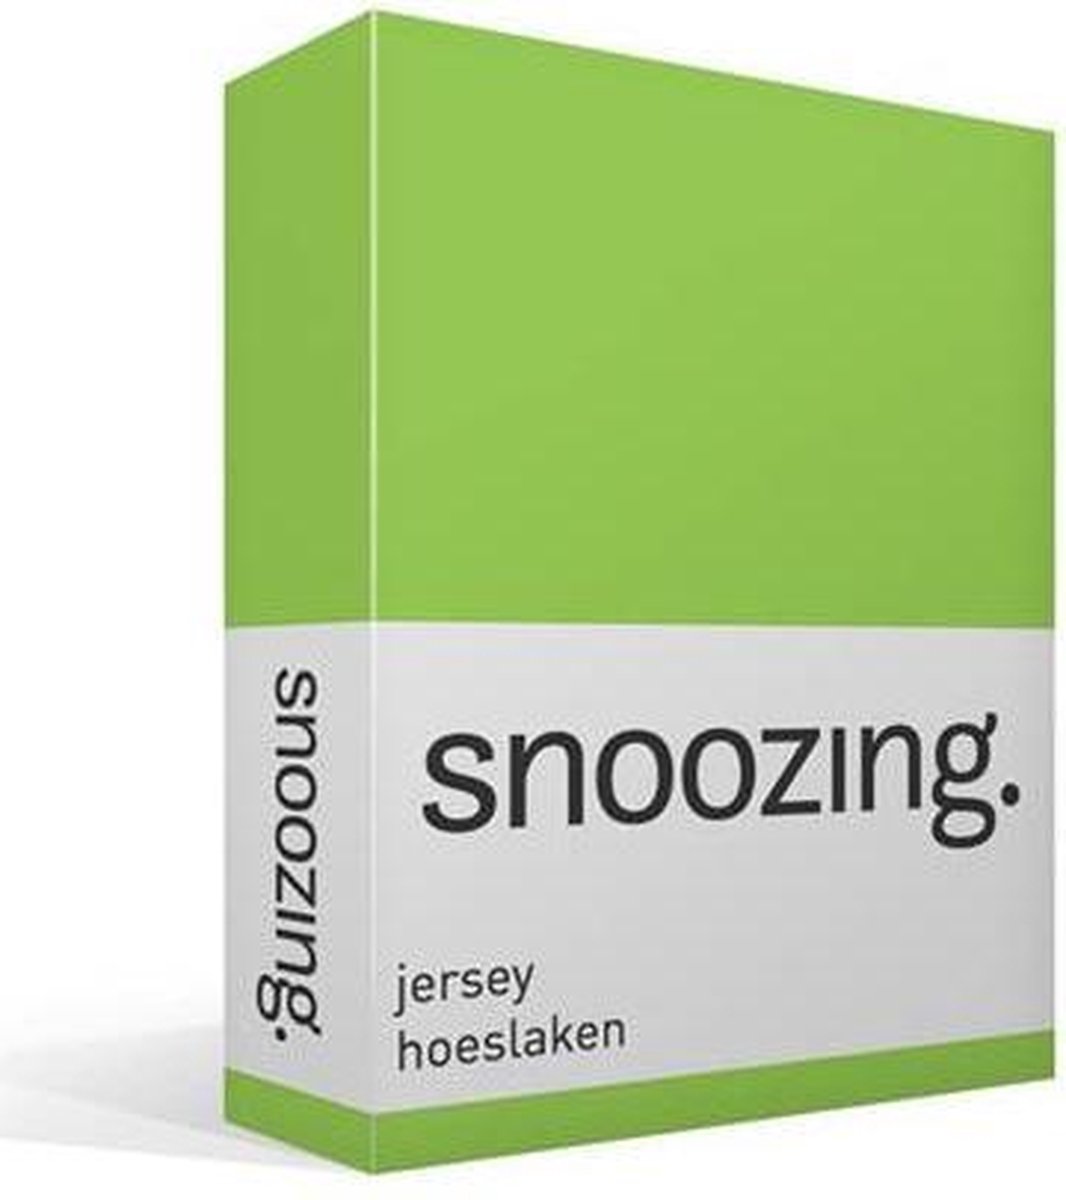 Snoozing Jersey Hoeslaken - 100% Gebreide Jersey Katoen - Lits-jumeaux (180x200 Cm) - Lime - Groen